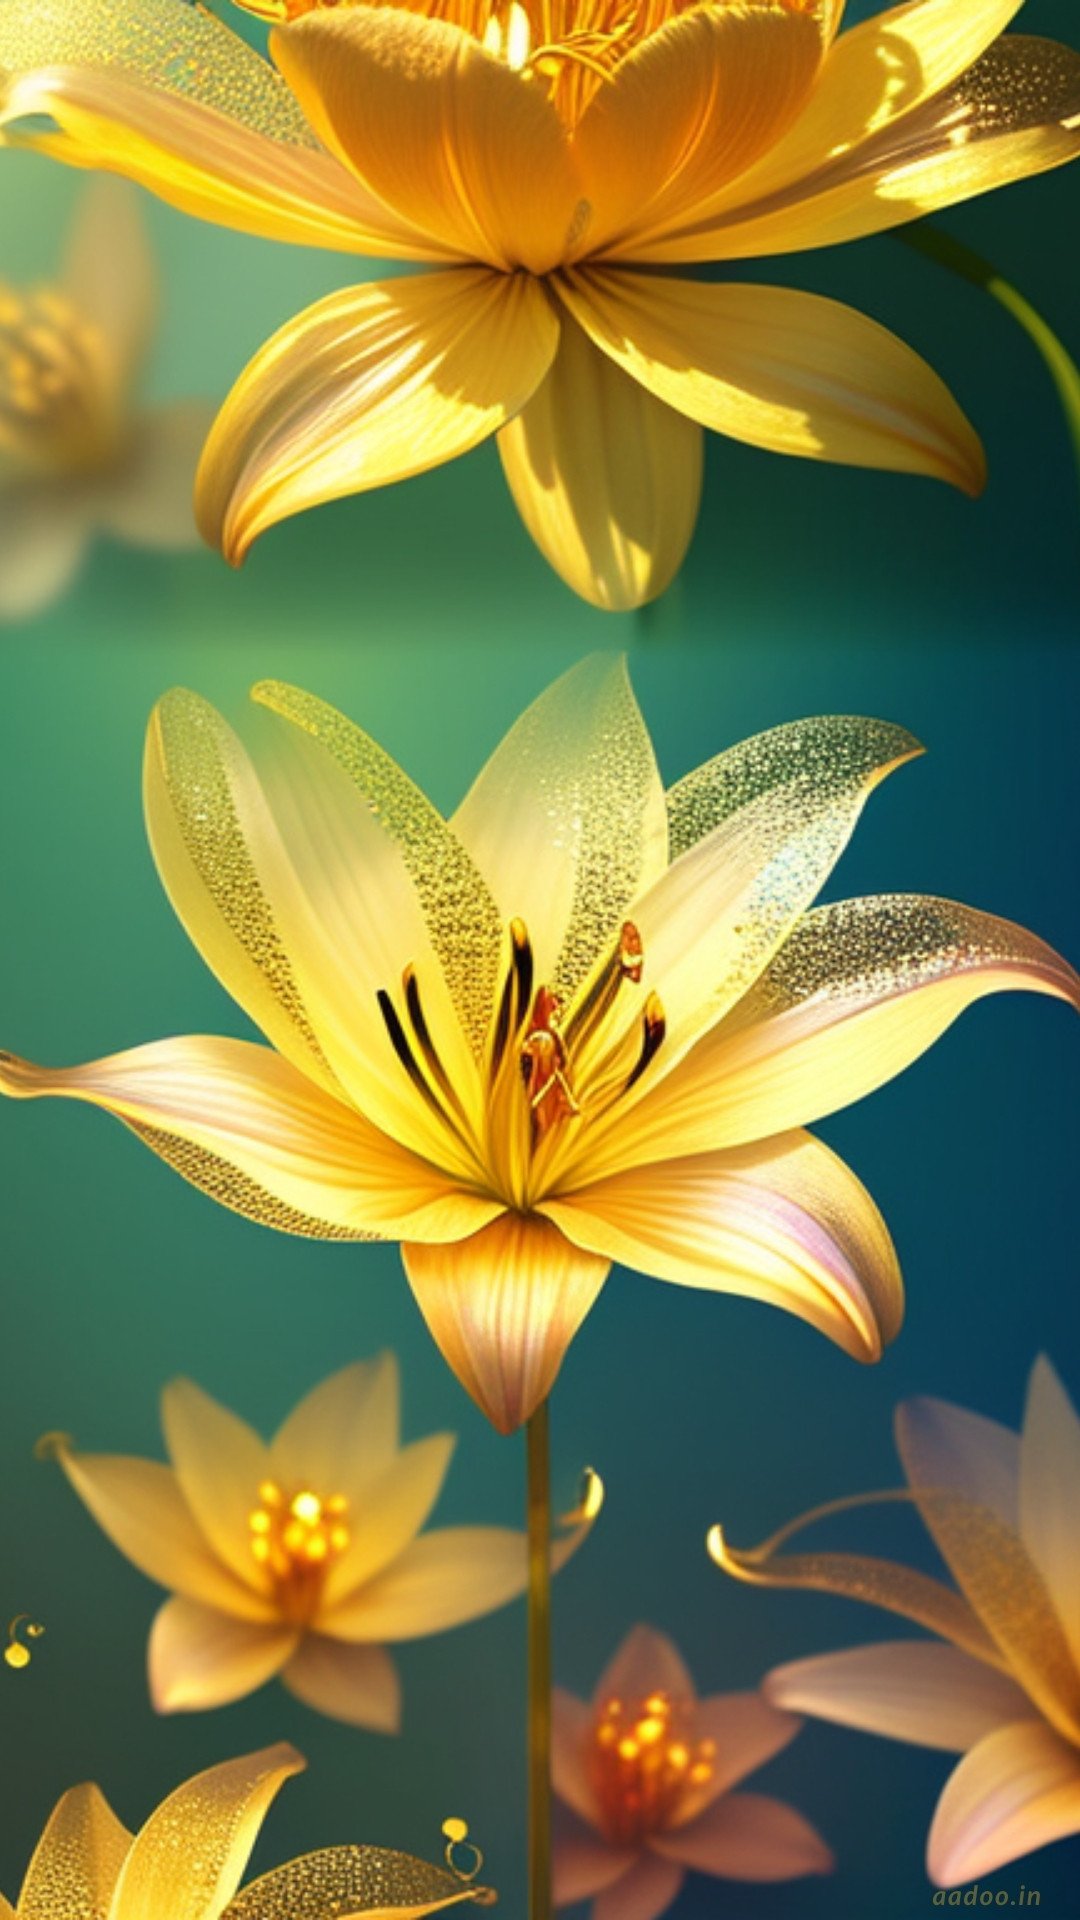 Beautiful 3D Flowers Wallpapers - 3D Flower Wallpaper